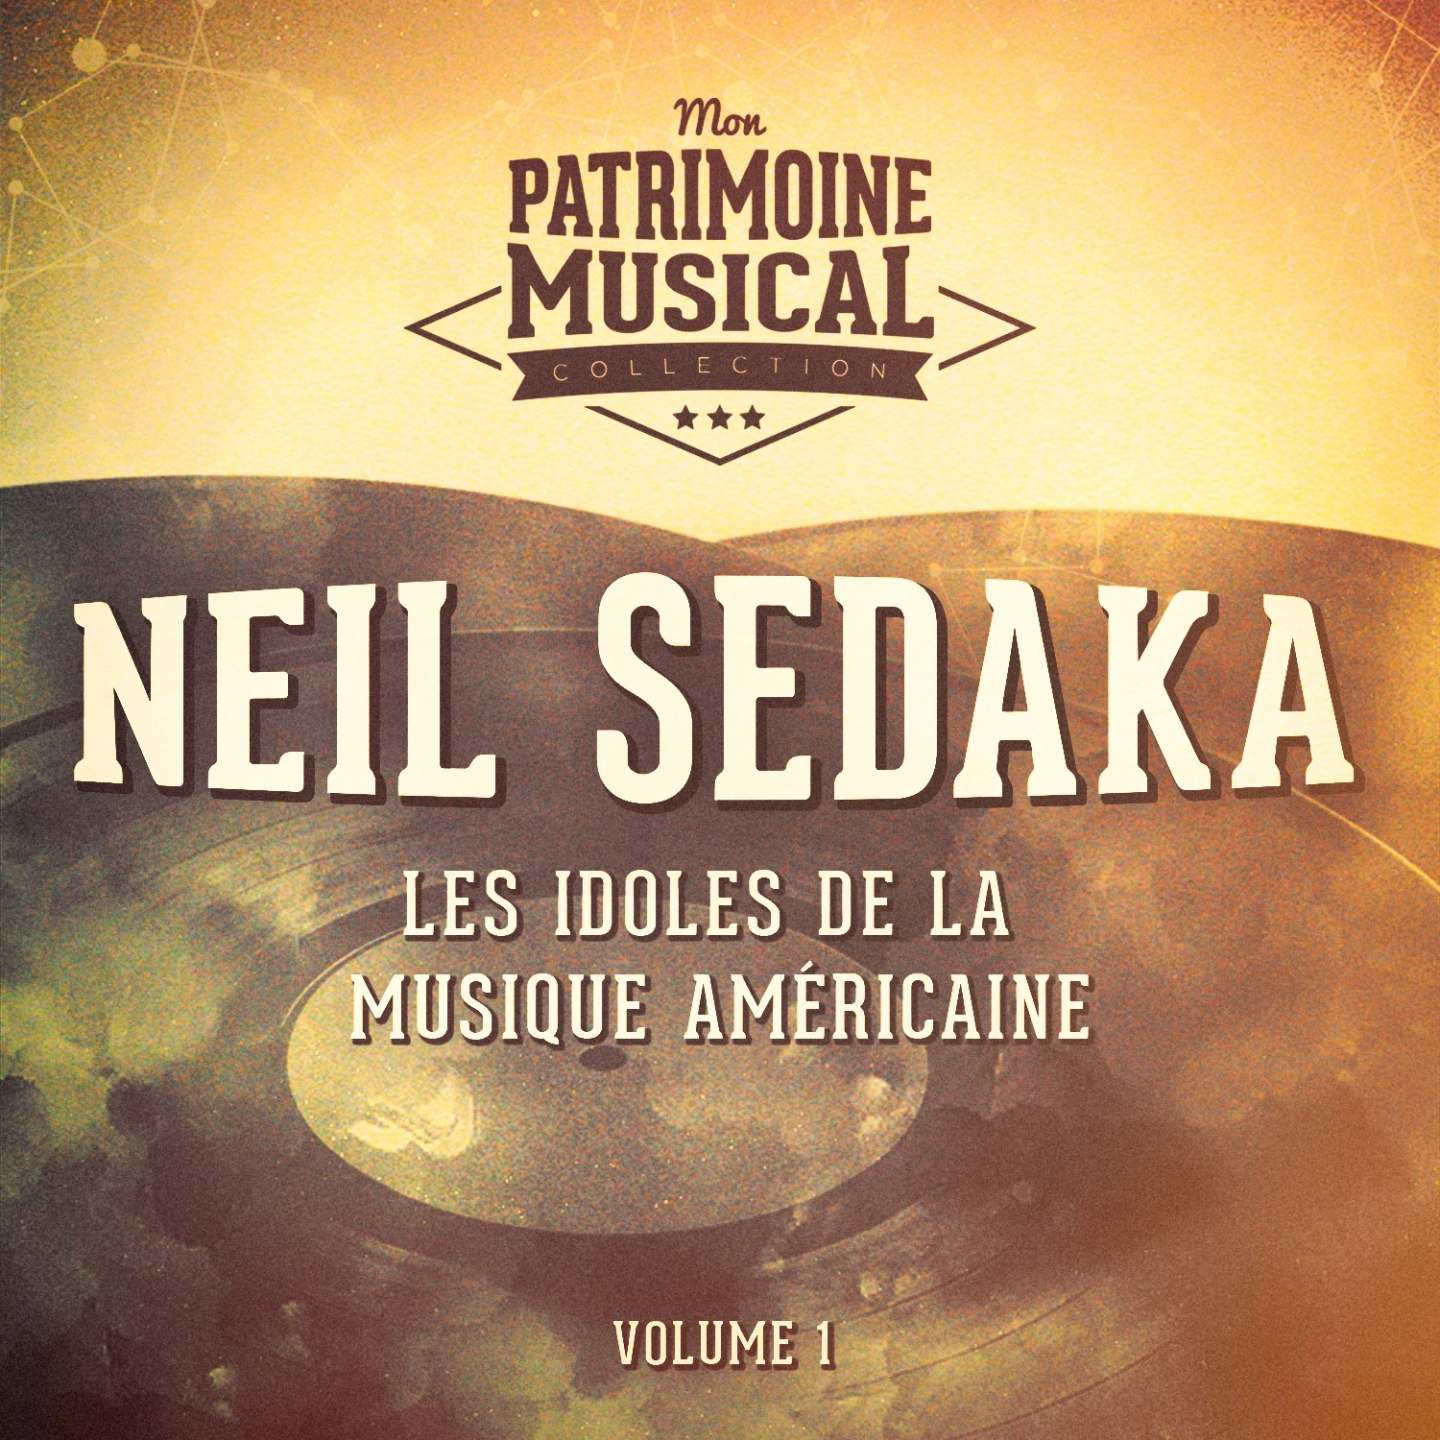 Les Idoles De La Musique Ame ricaine: Neil Sedaka, Vol. 1